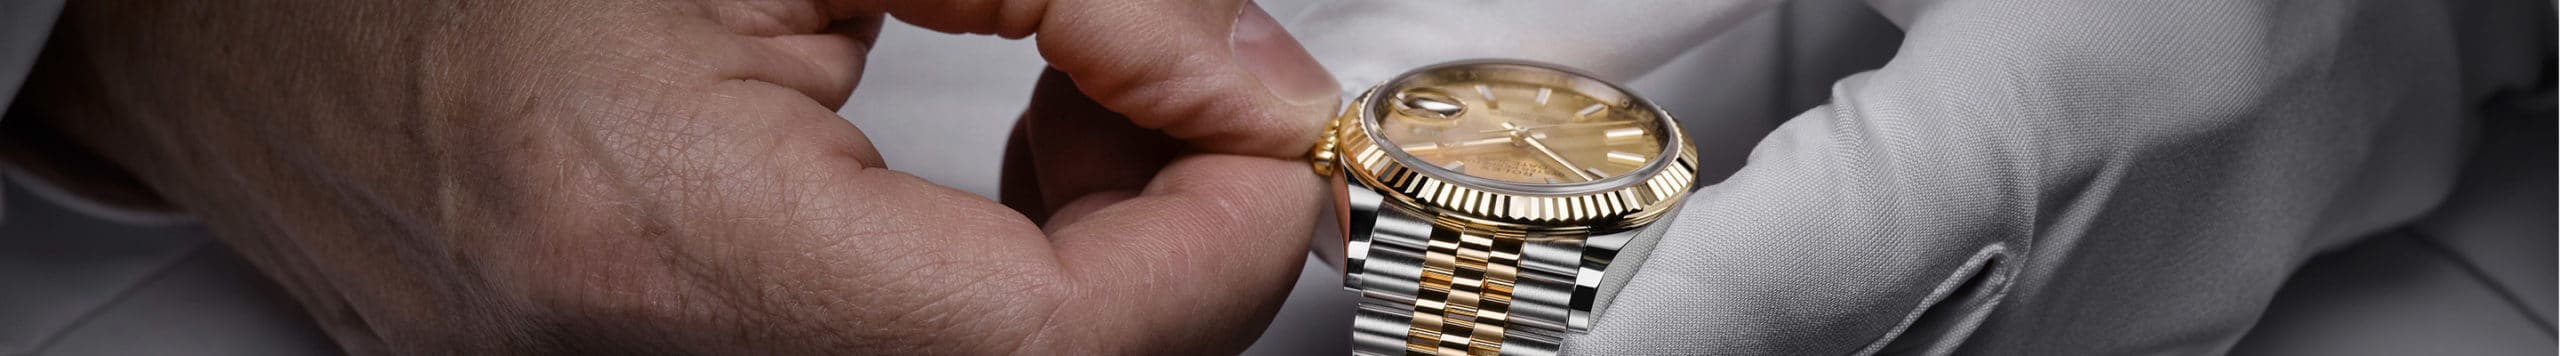 การนำ Rolex ของคุณเข้ารับบริการ | Rolex Official Retailer - Srichai Watch